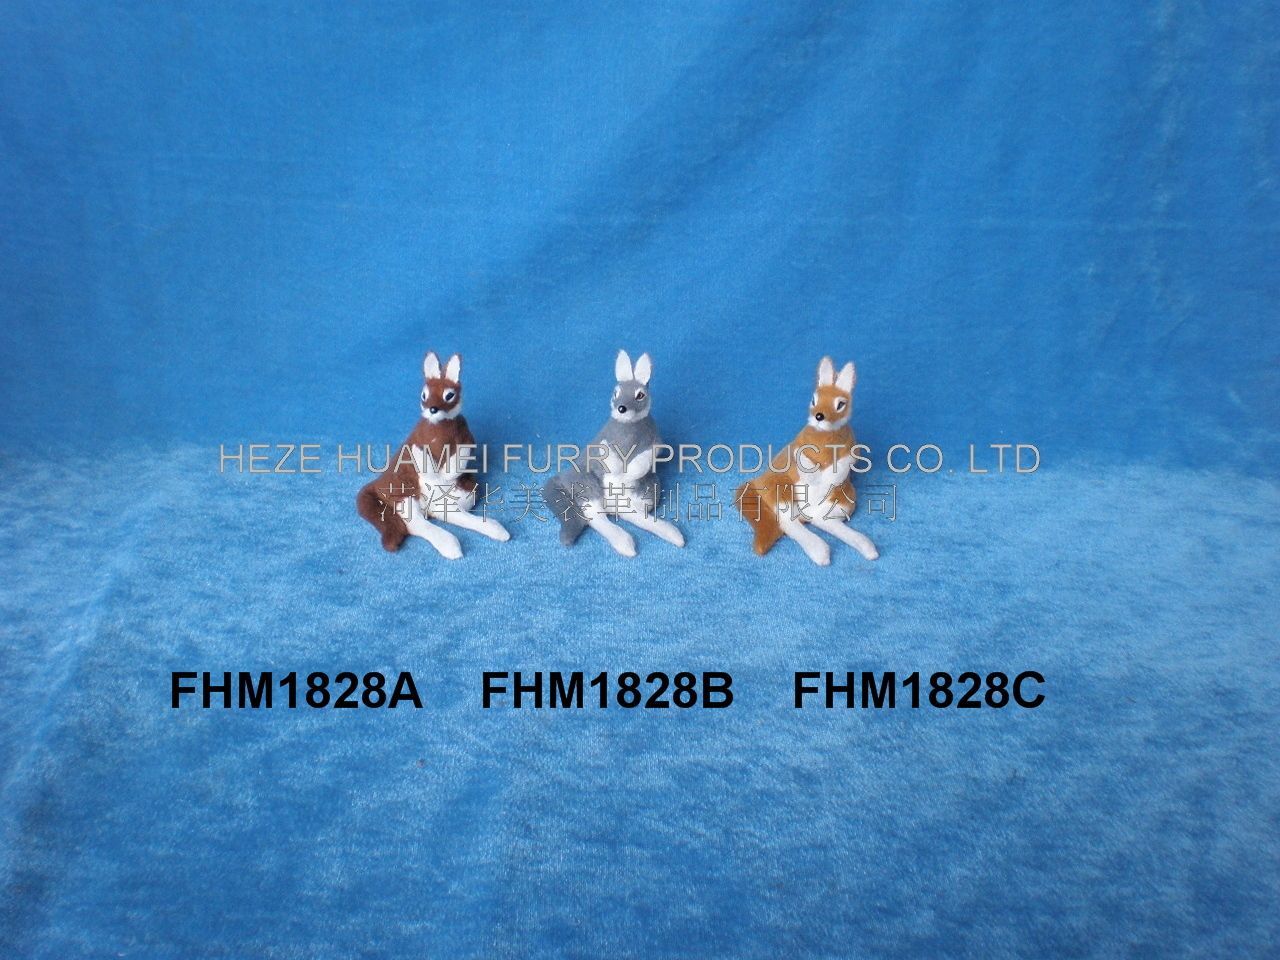 FHM1828A   FHM1828B    FHM1828C,菏泽宇航裘革制品有限公司专业仿真皮毛动物生产厂家